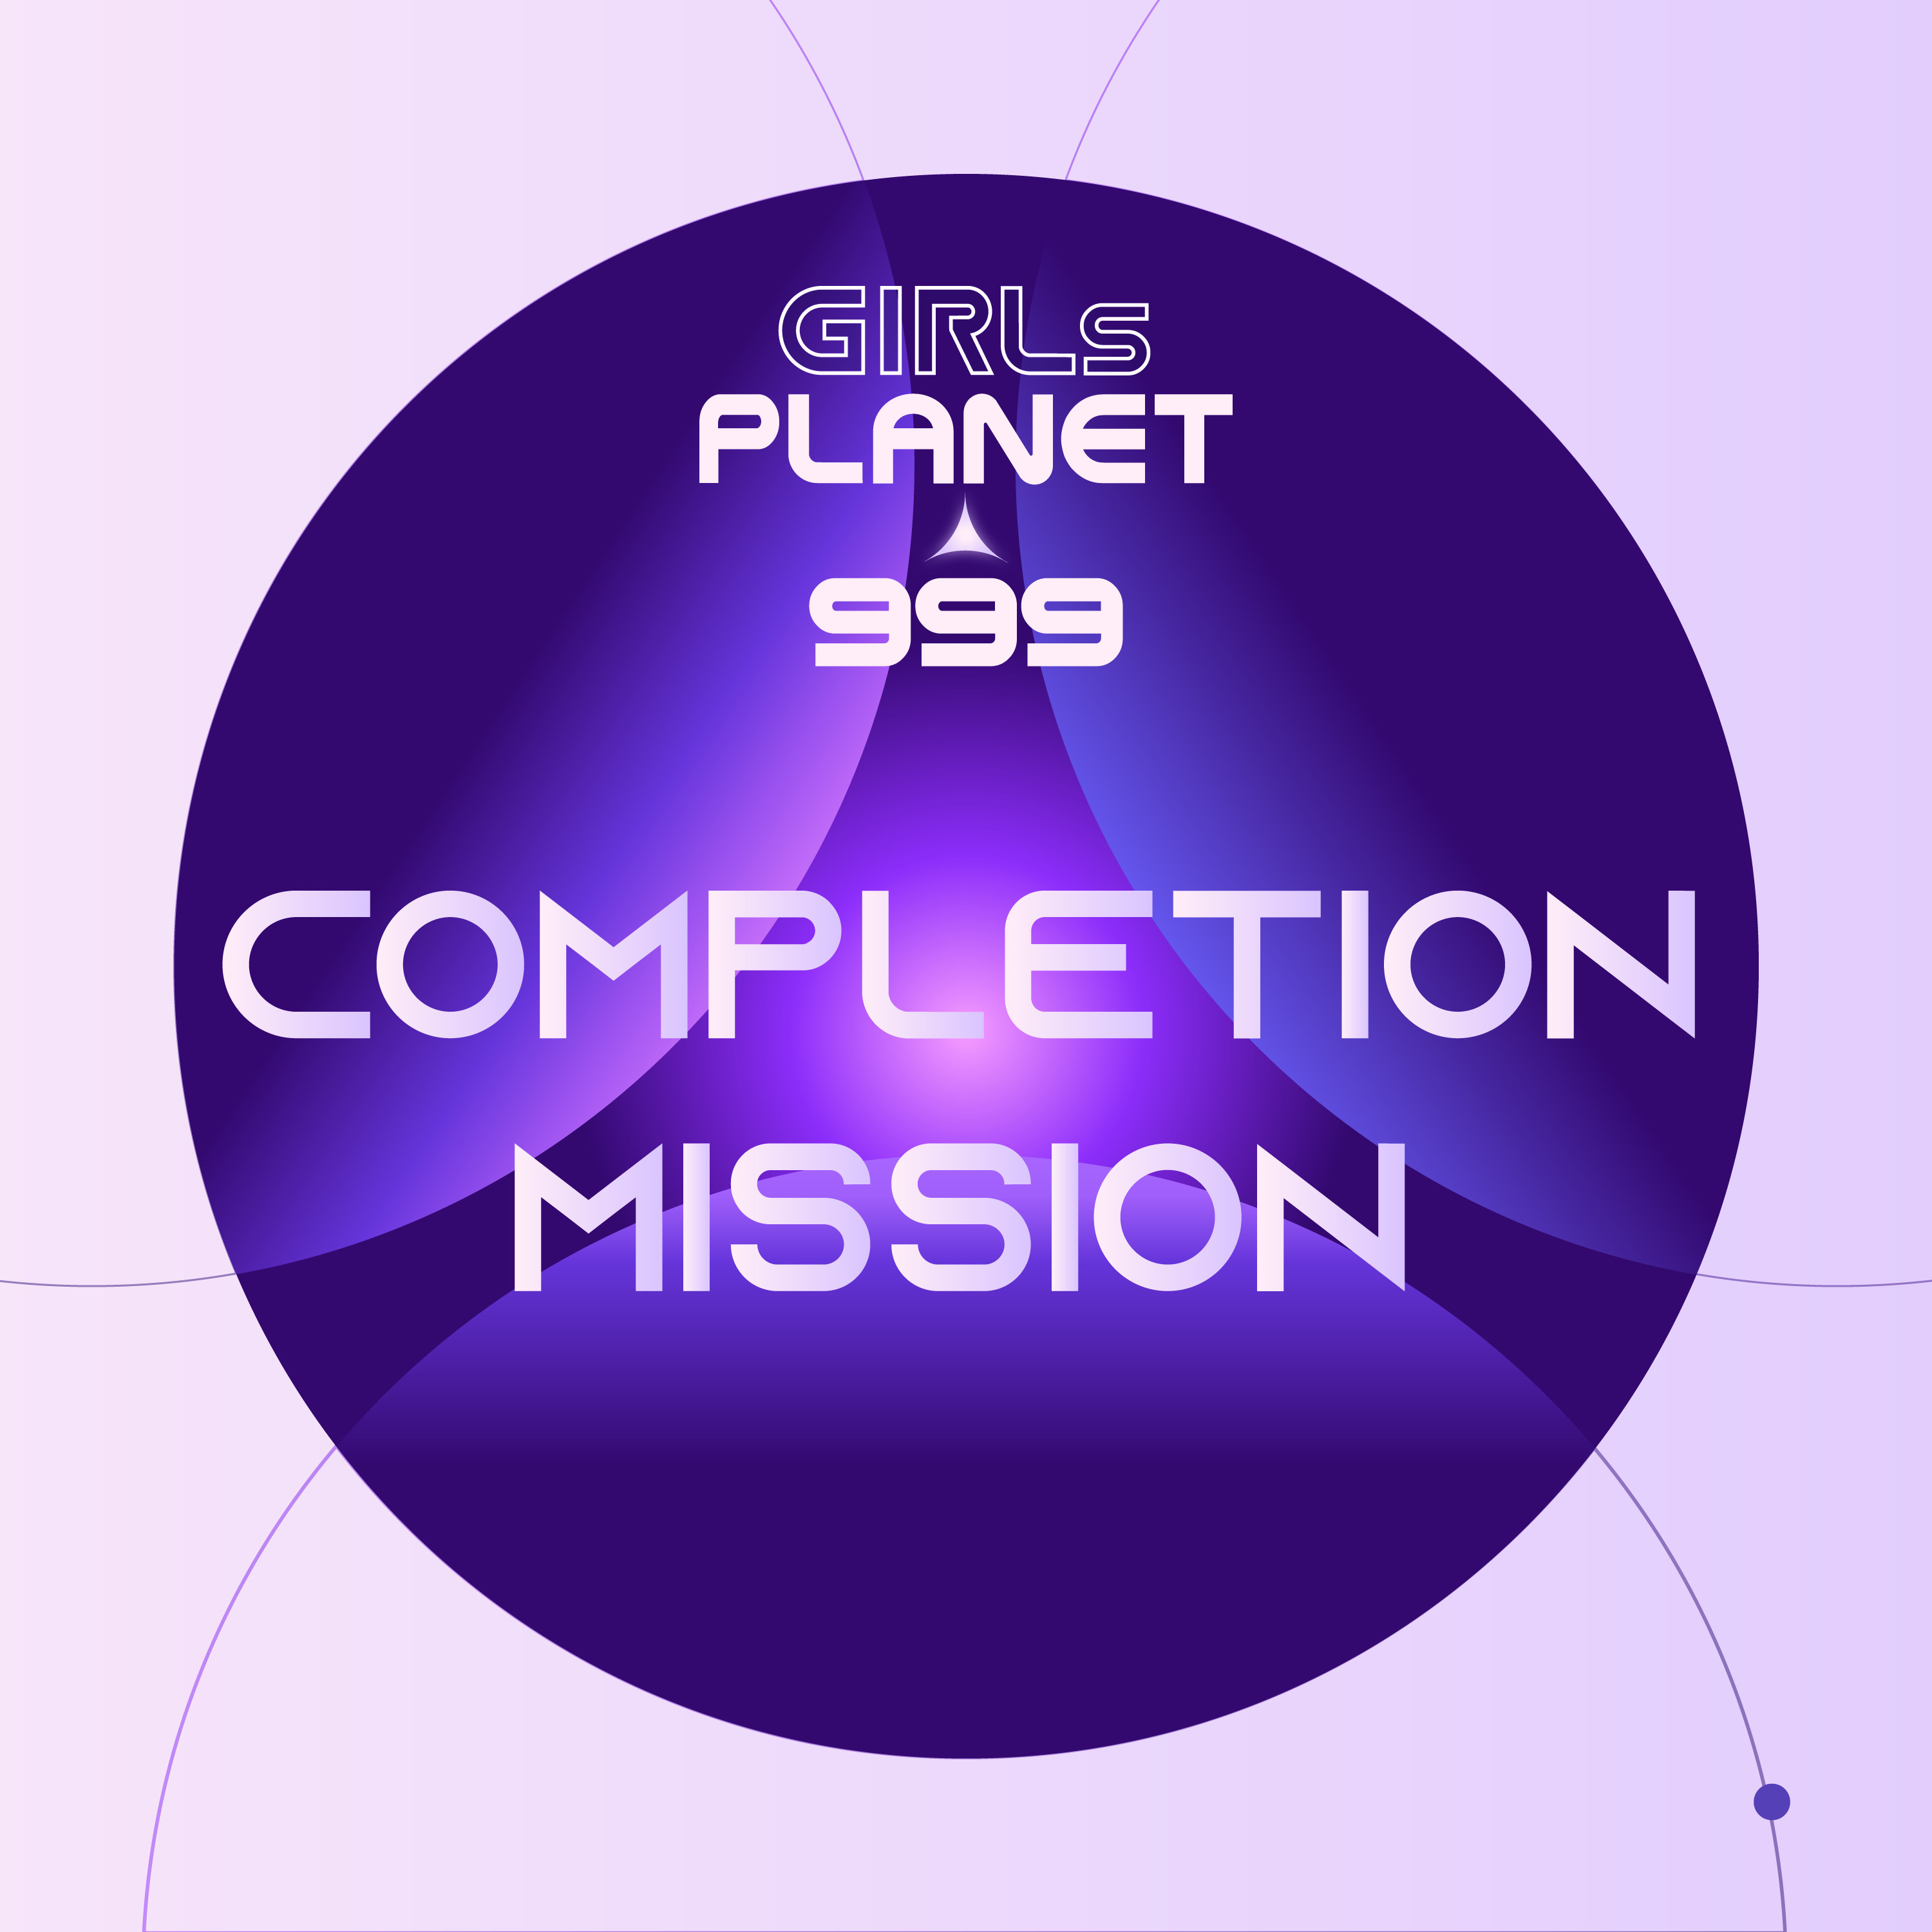 [情報] Girls Planet 999 - Completion Mission